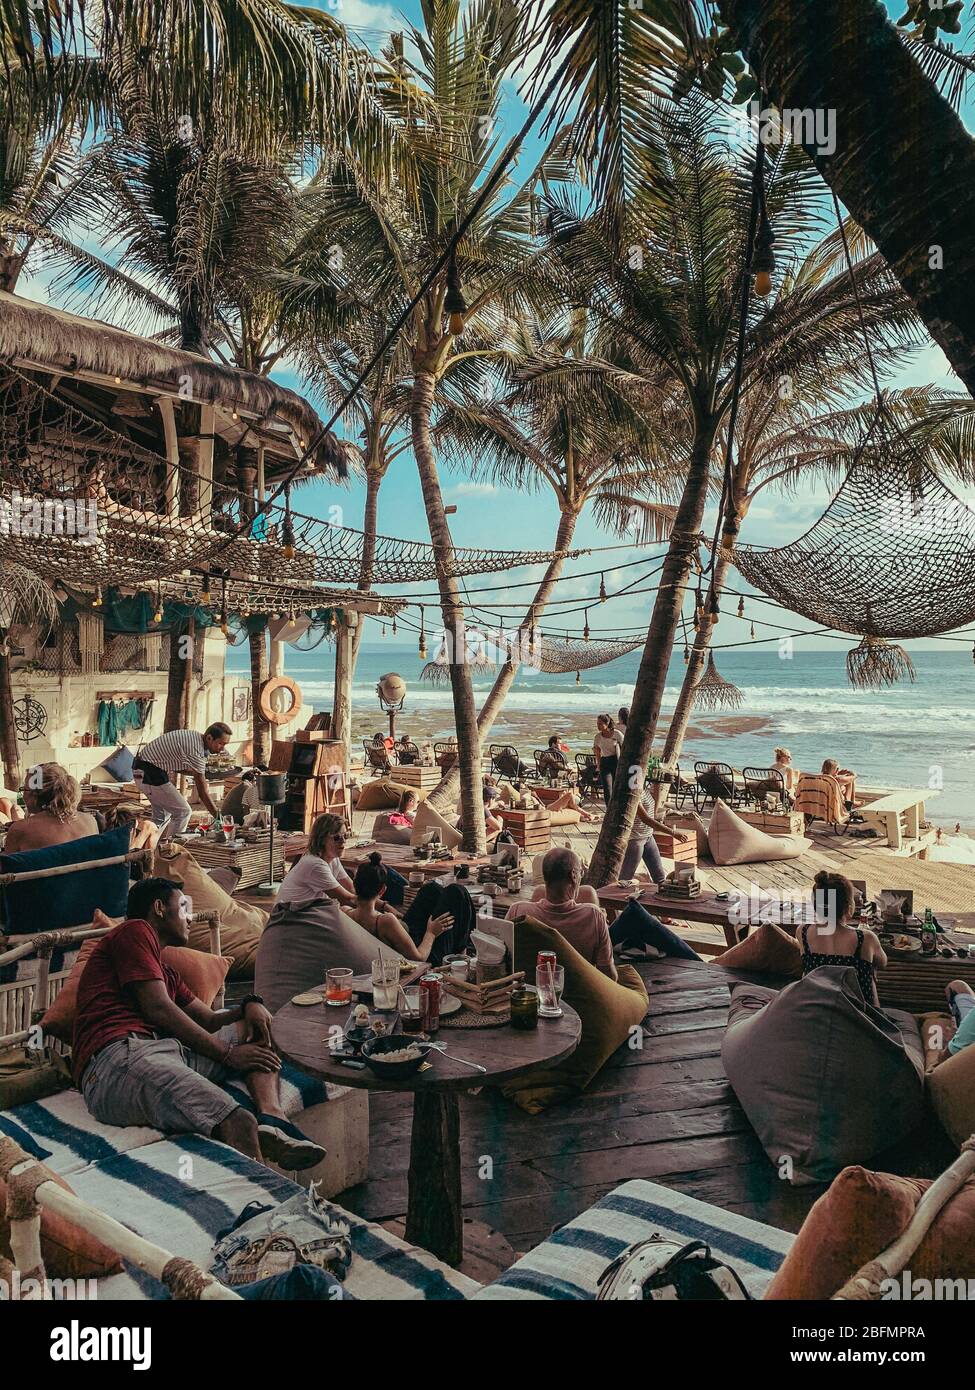 La Brisa, Bali - 15, 2019 ottobre. Tradizionale hippie bar sulla riva dell'isola tropicale all'aperto con mobili d'epoca. Foto Stock